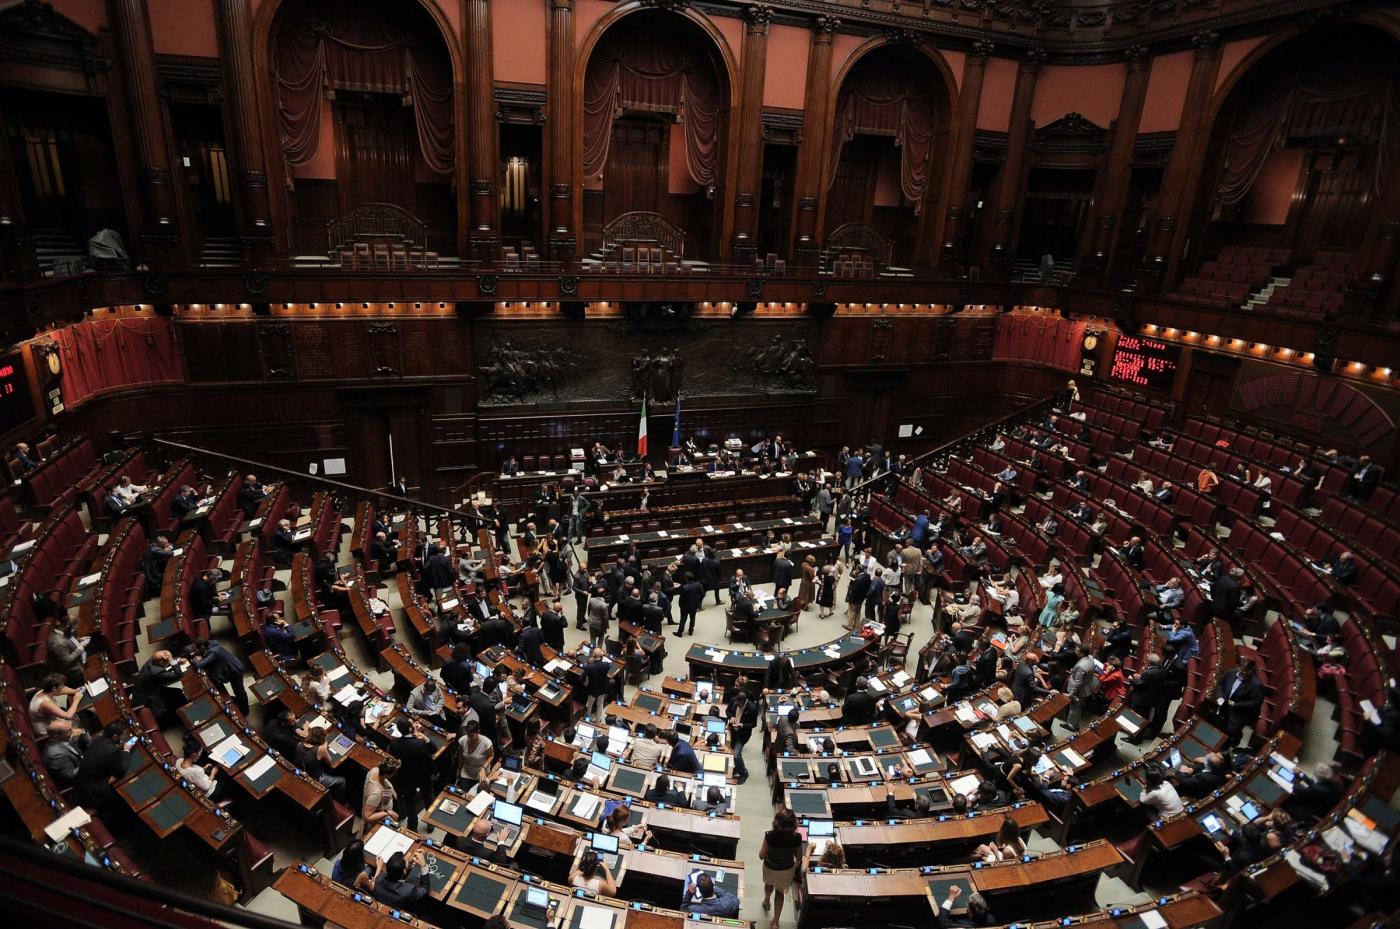 Elezioni anticipate o vitalizio? Quei parlamentari tormentati dopo le dimissioni di Renzi